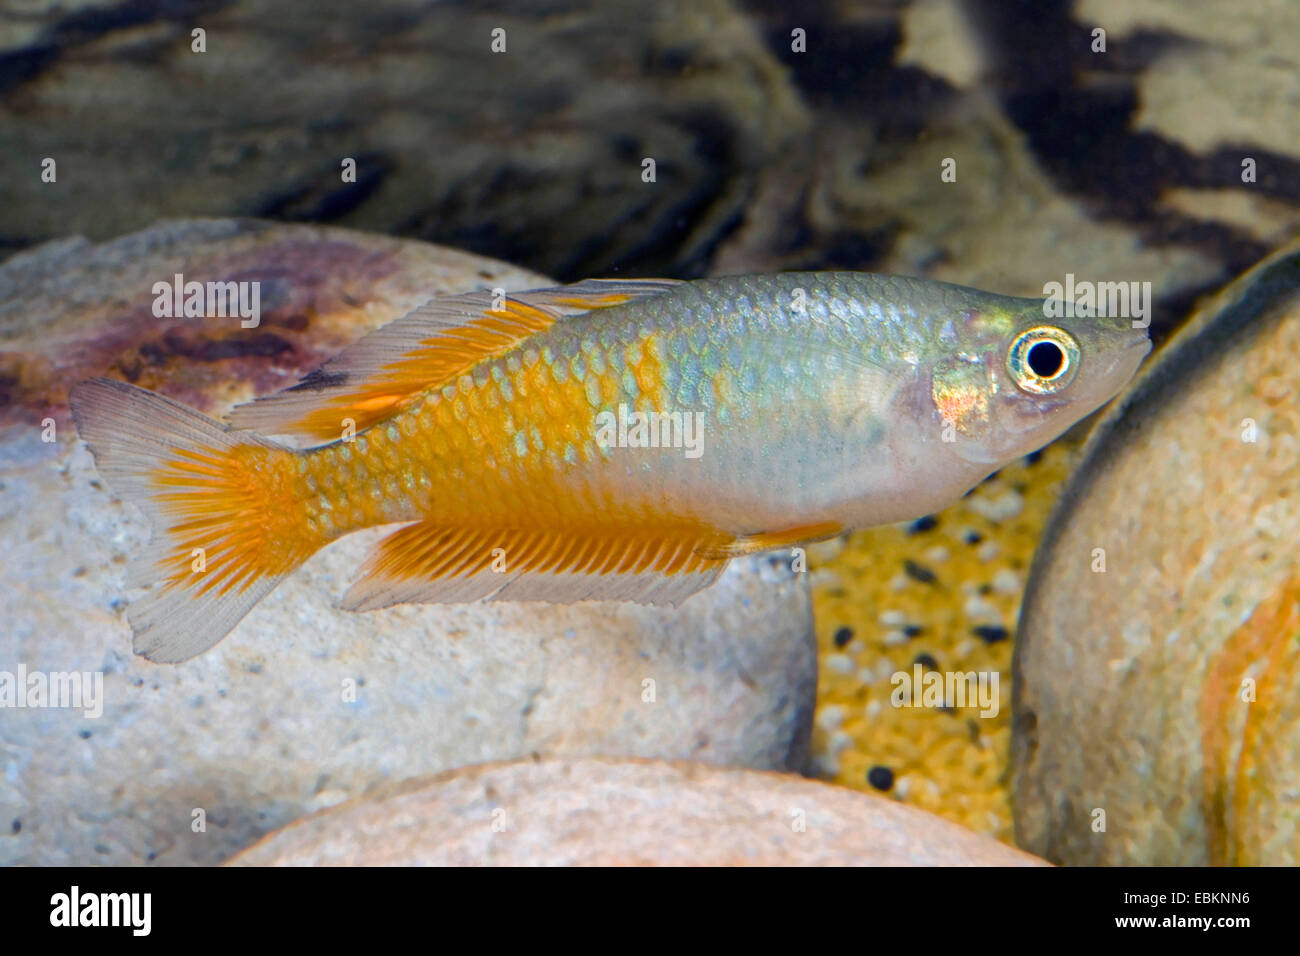 L'Parkenson Rainbowfish Parkenson, Rainbowfish (Melanotaenia parkinsoni), portrait Banque D'Images